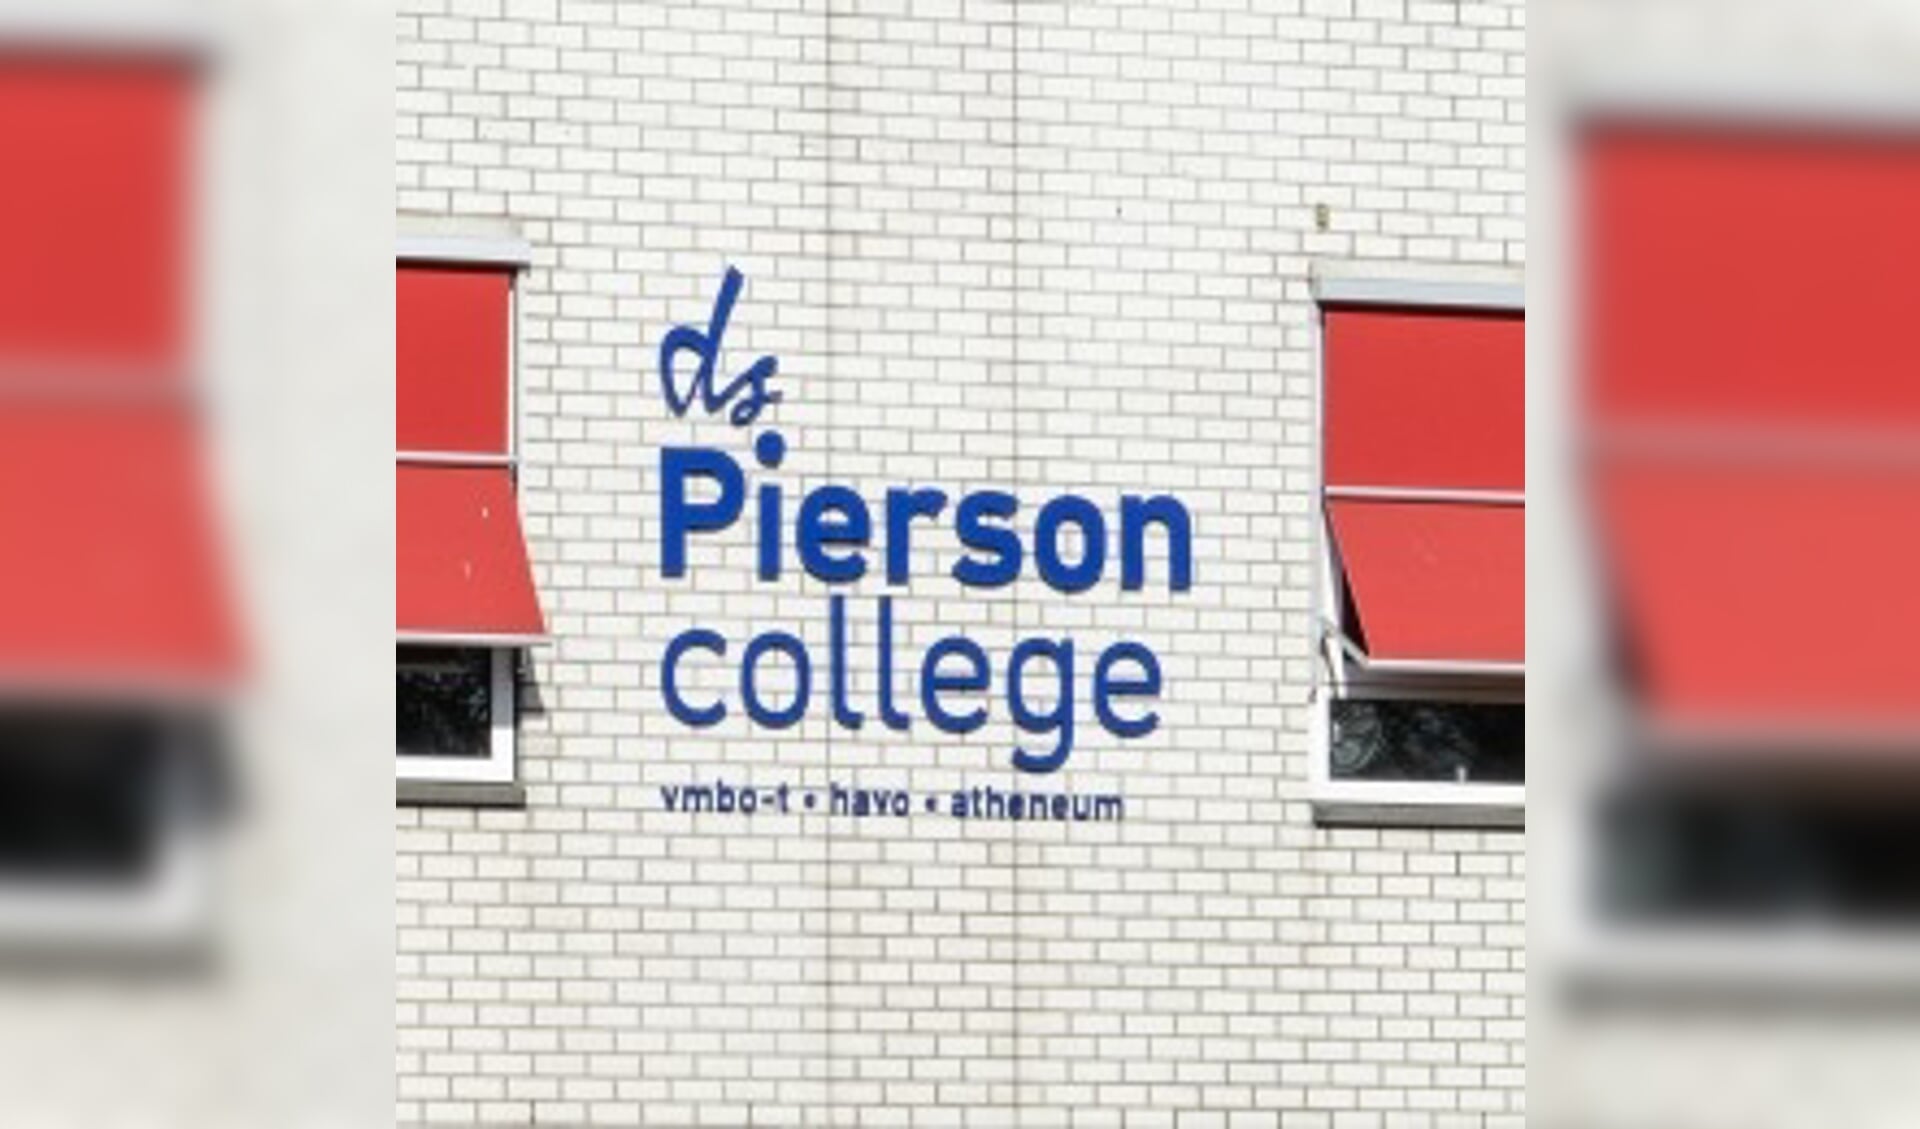 Bericht van het ds. Pierson College in Den Bosch.